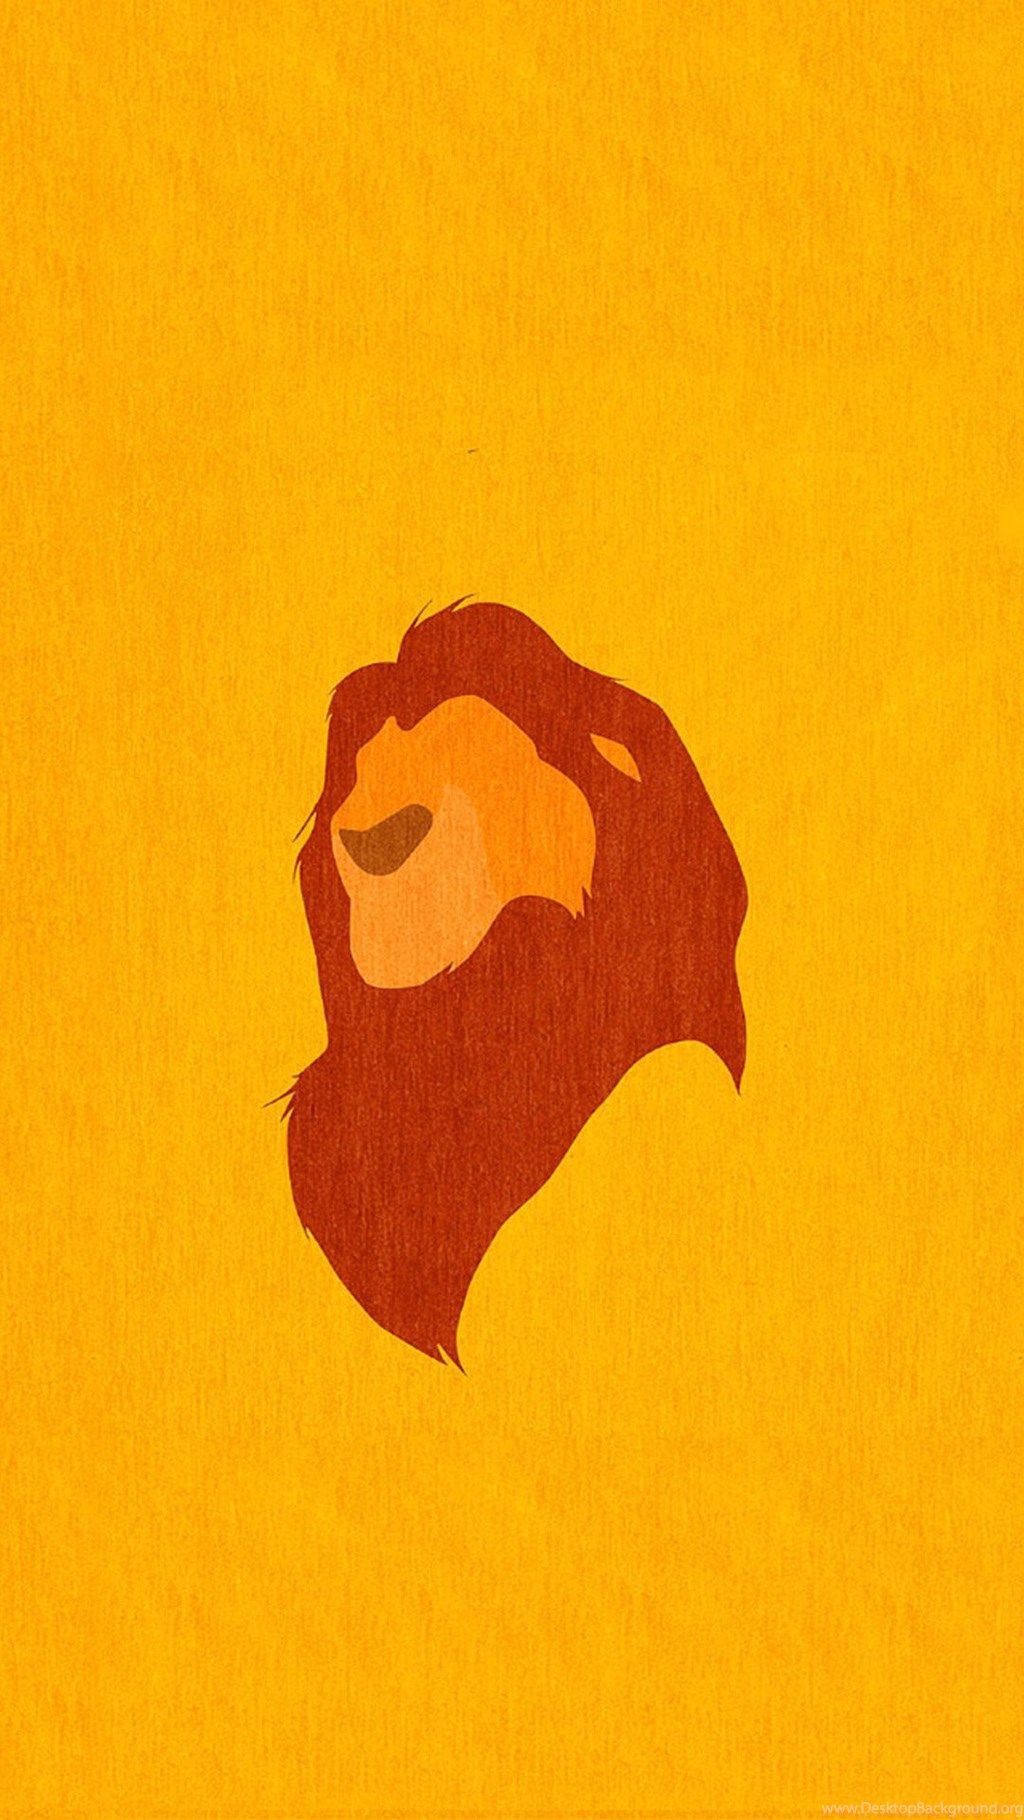 Lion King Wallpapers For Galaxy S5.jpg Fondo de Escritorio